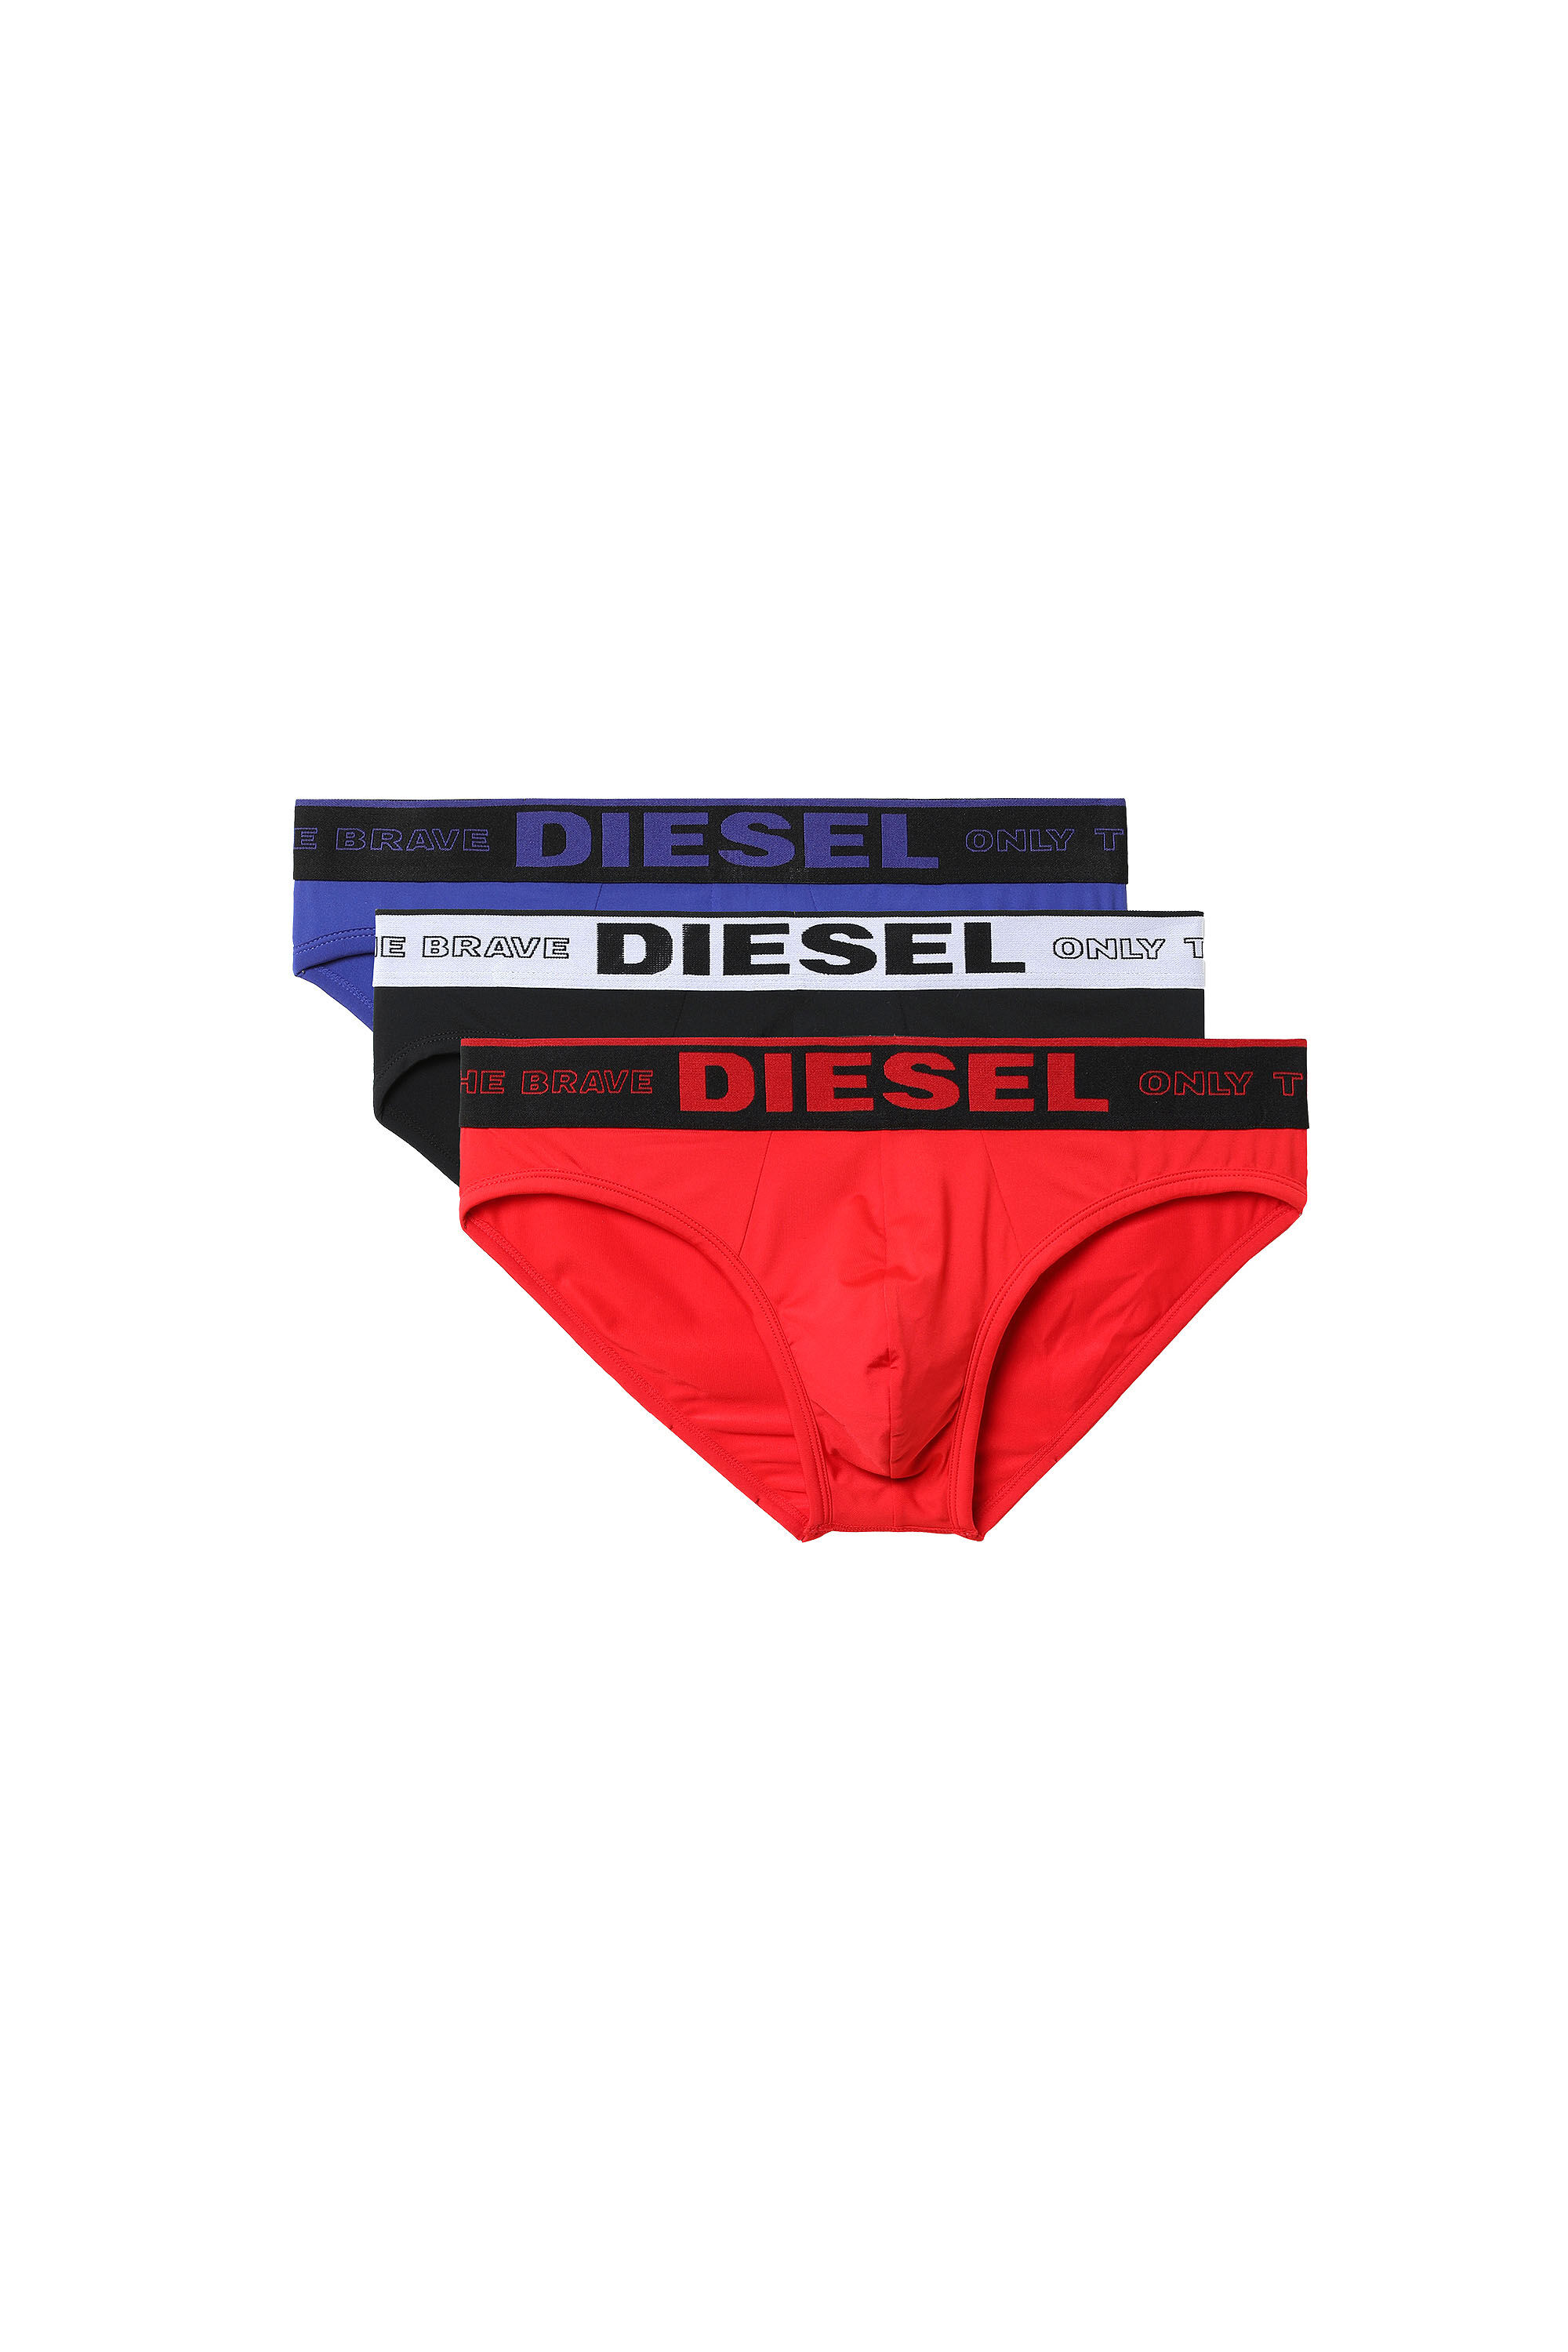 Diesel - 55-DBRIEF-THREEPACK, Black/Red - Image 2